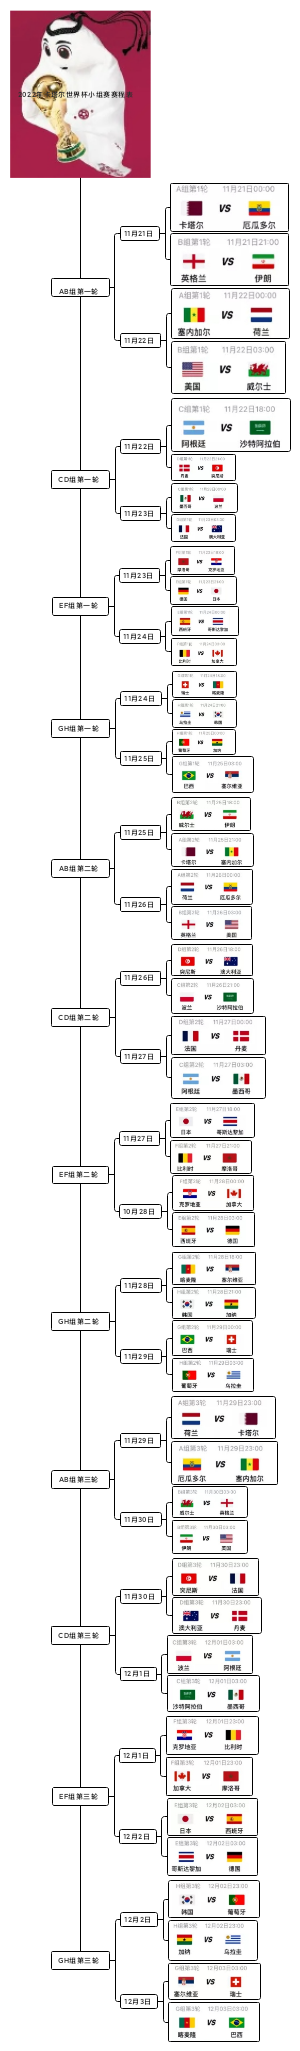 2022年卡塔尔世界杯小组赛赛程表